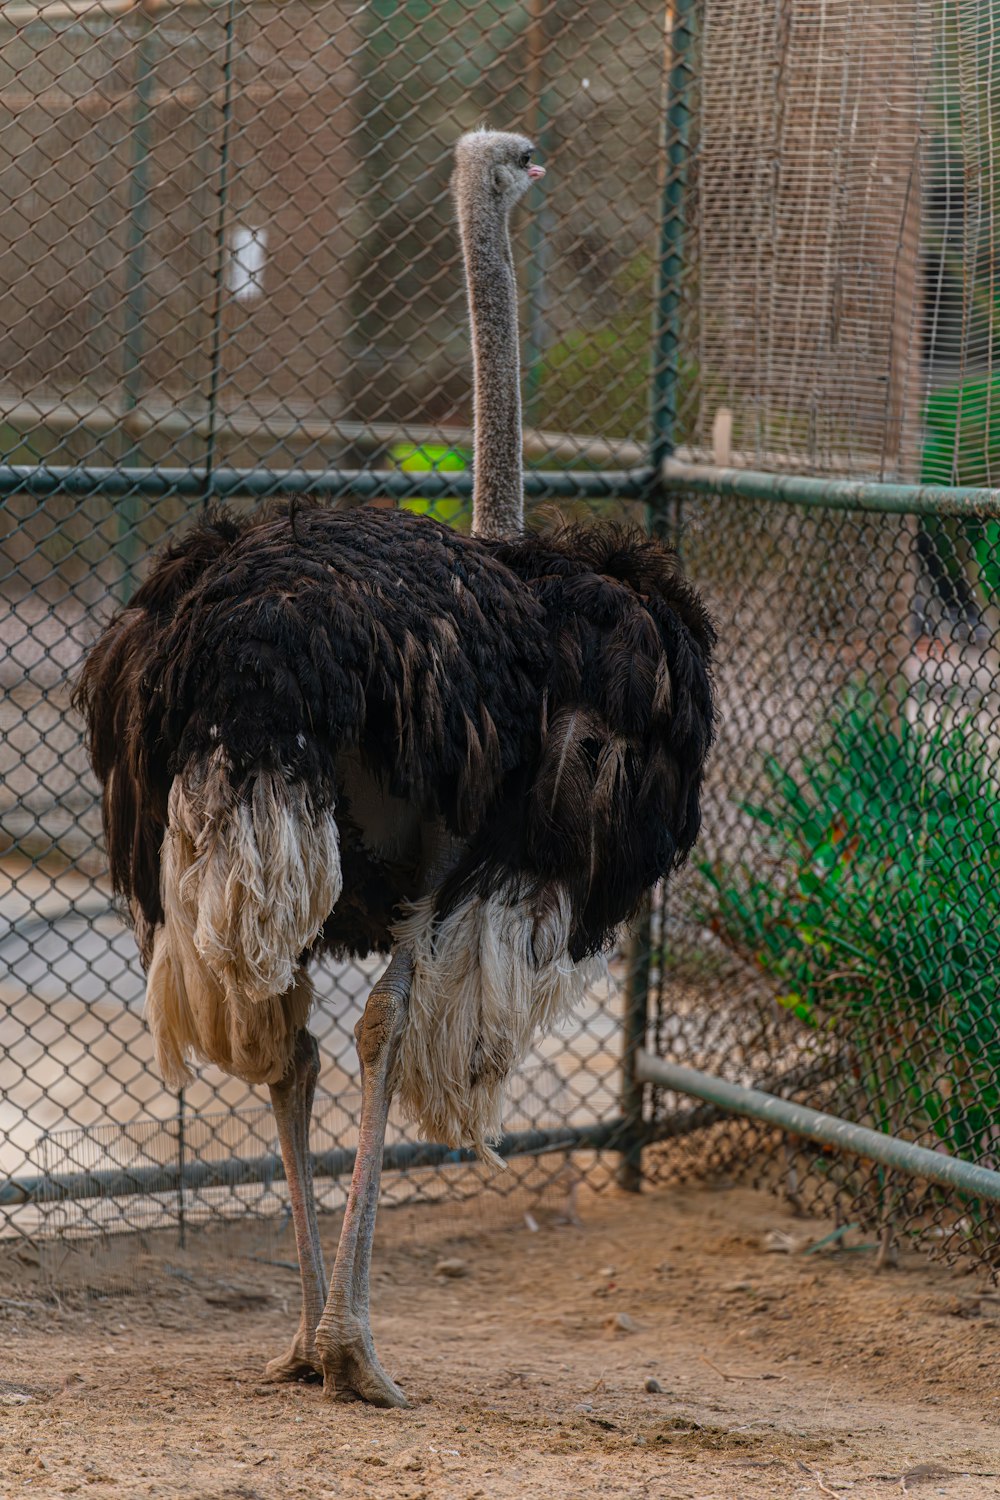 un avestruz parado en un área cercada